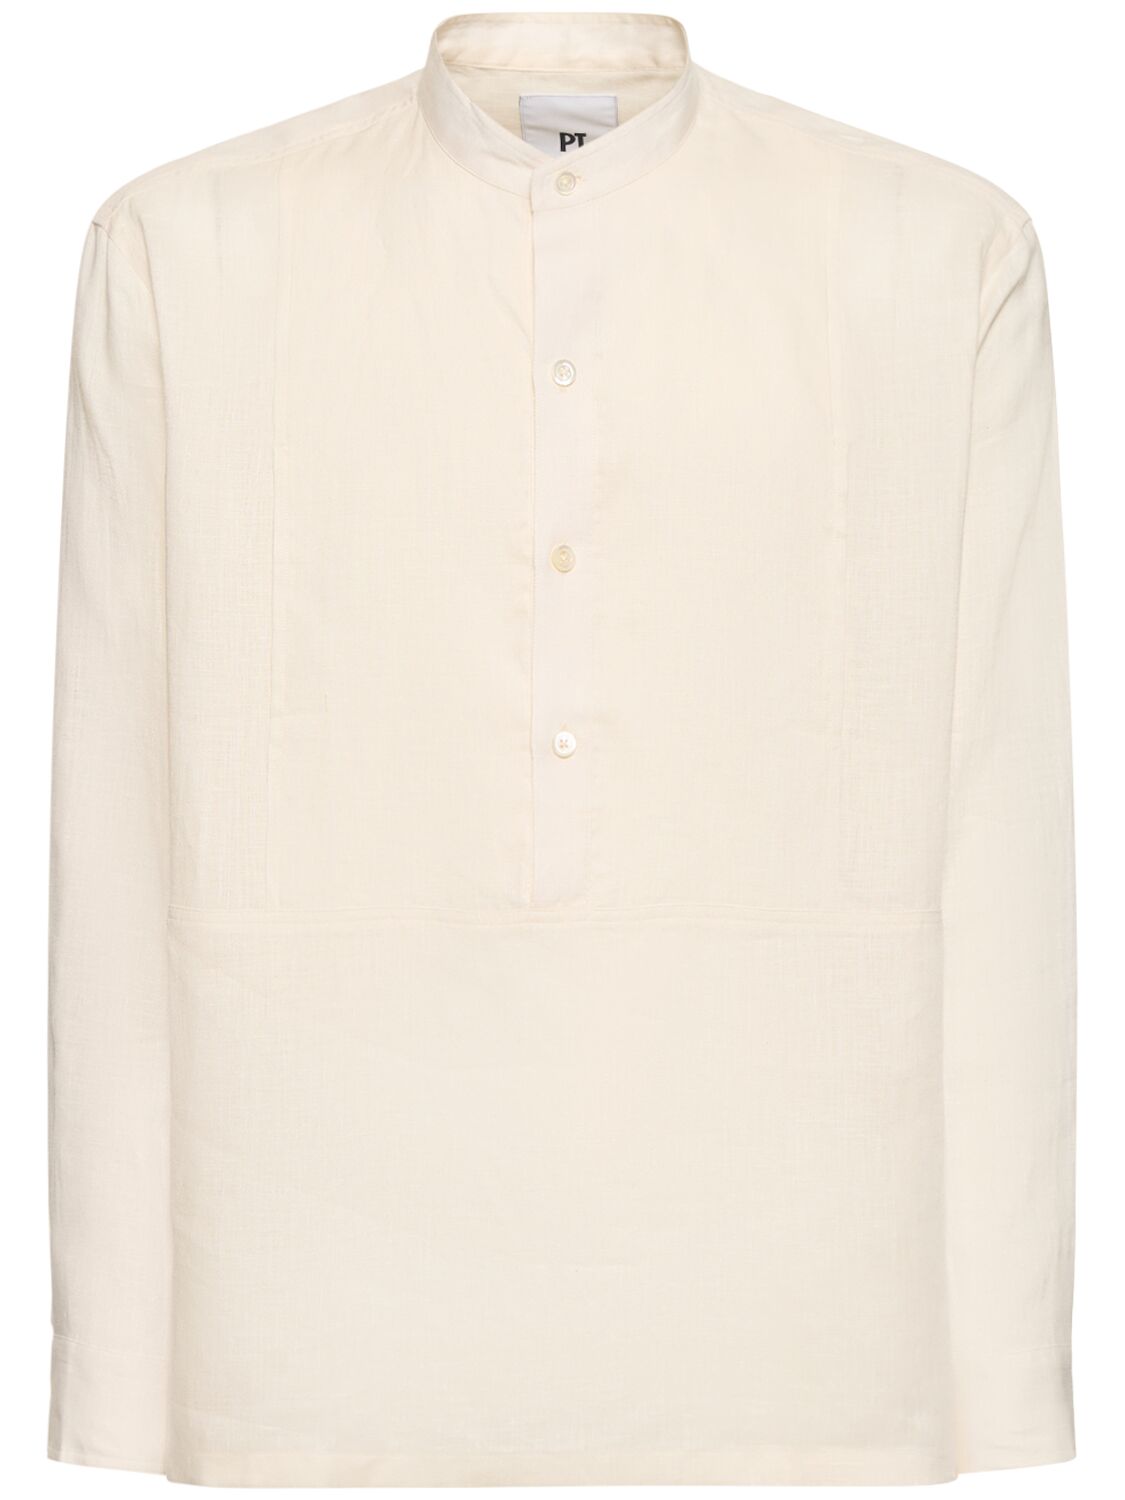 Pt Torino Linen Mariner Shirt In White